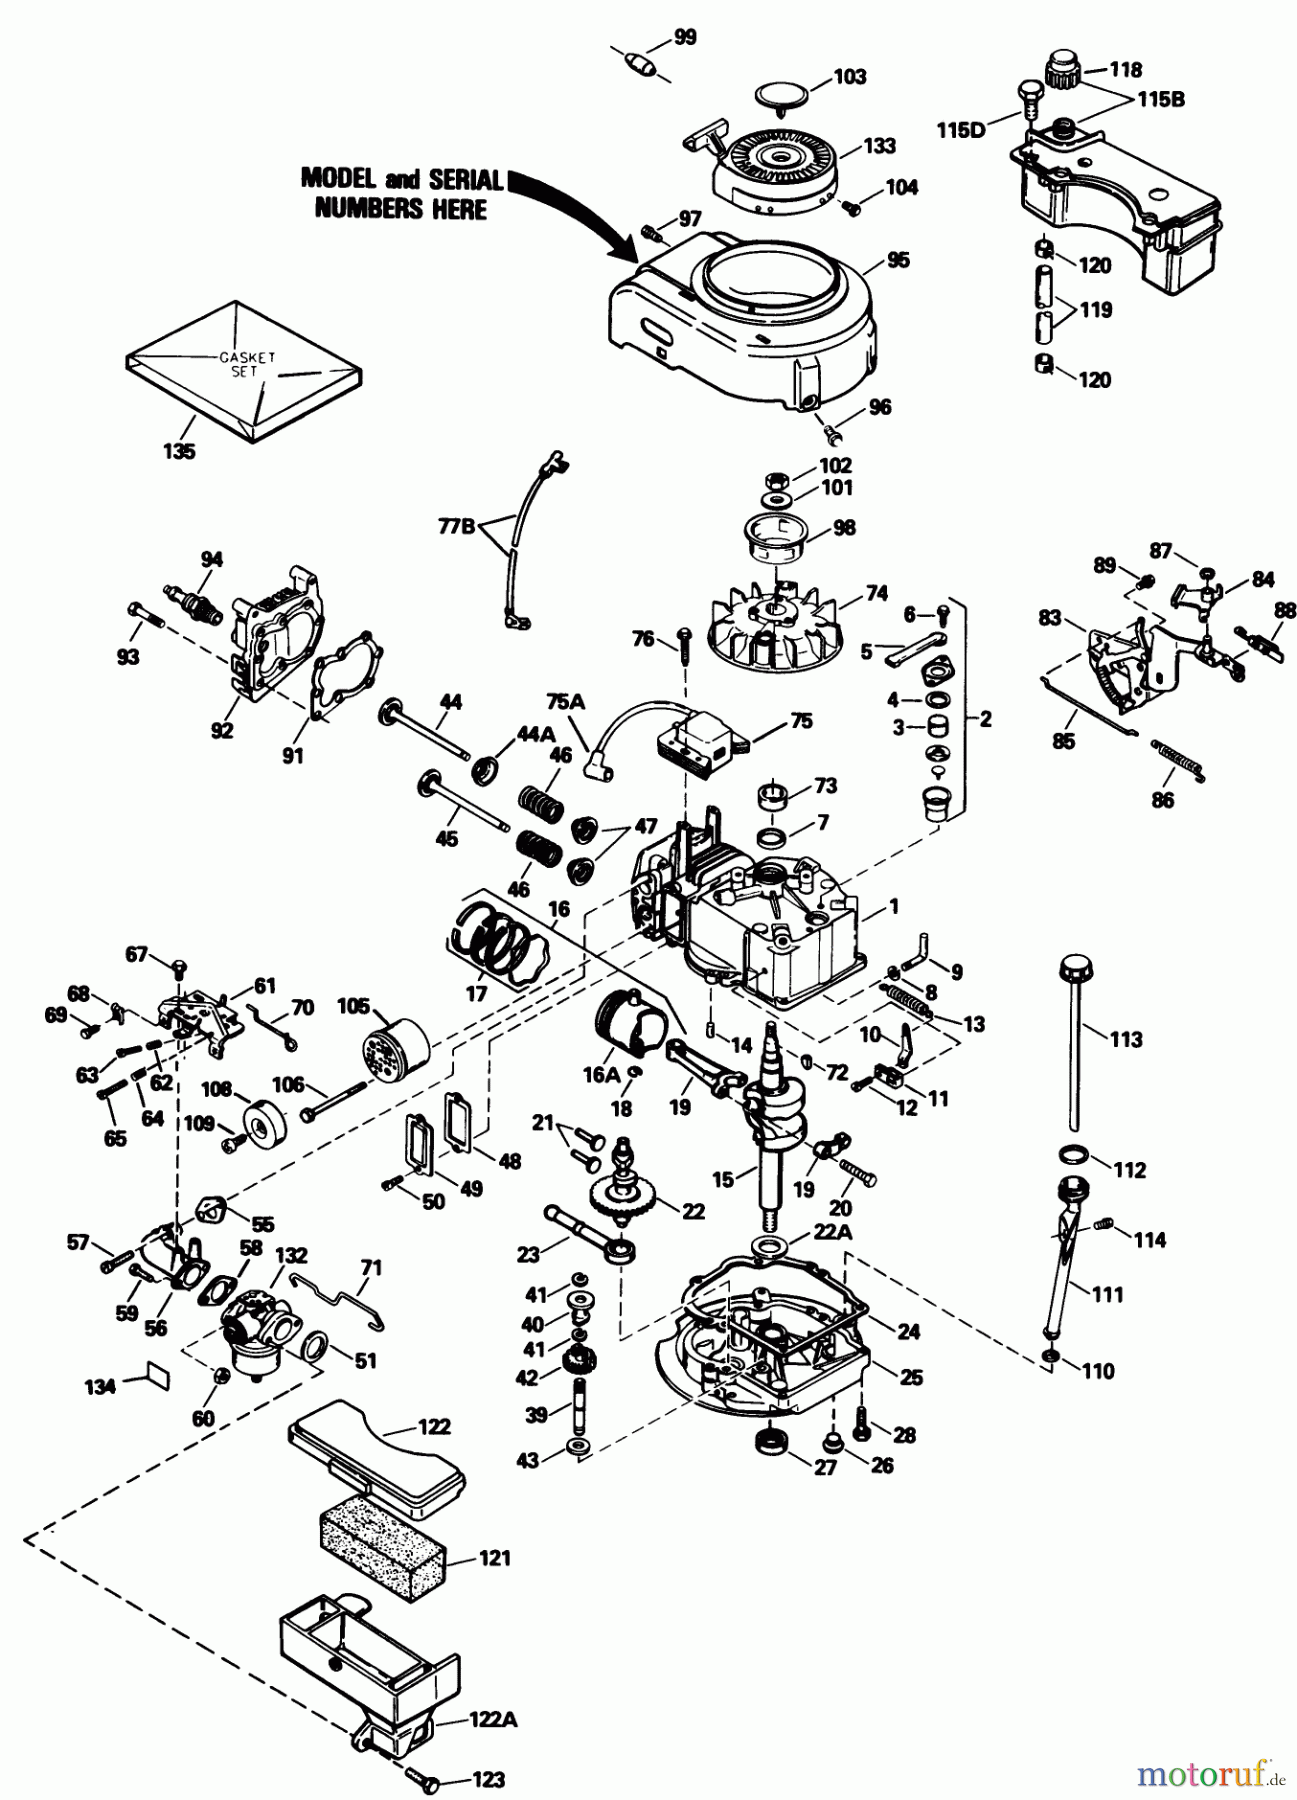  Toro Neu Mowers, Walk-Behind Seite 1 20611 - Toro Lawnmower, 1989 (9000001-9999999) ENGINE MODEL NO. TVS100-44015B